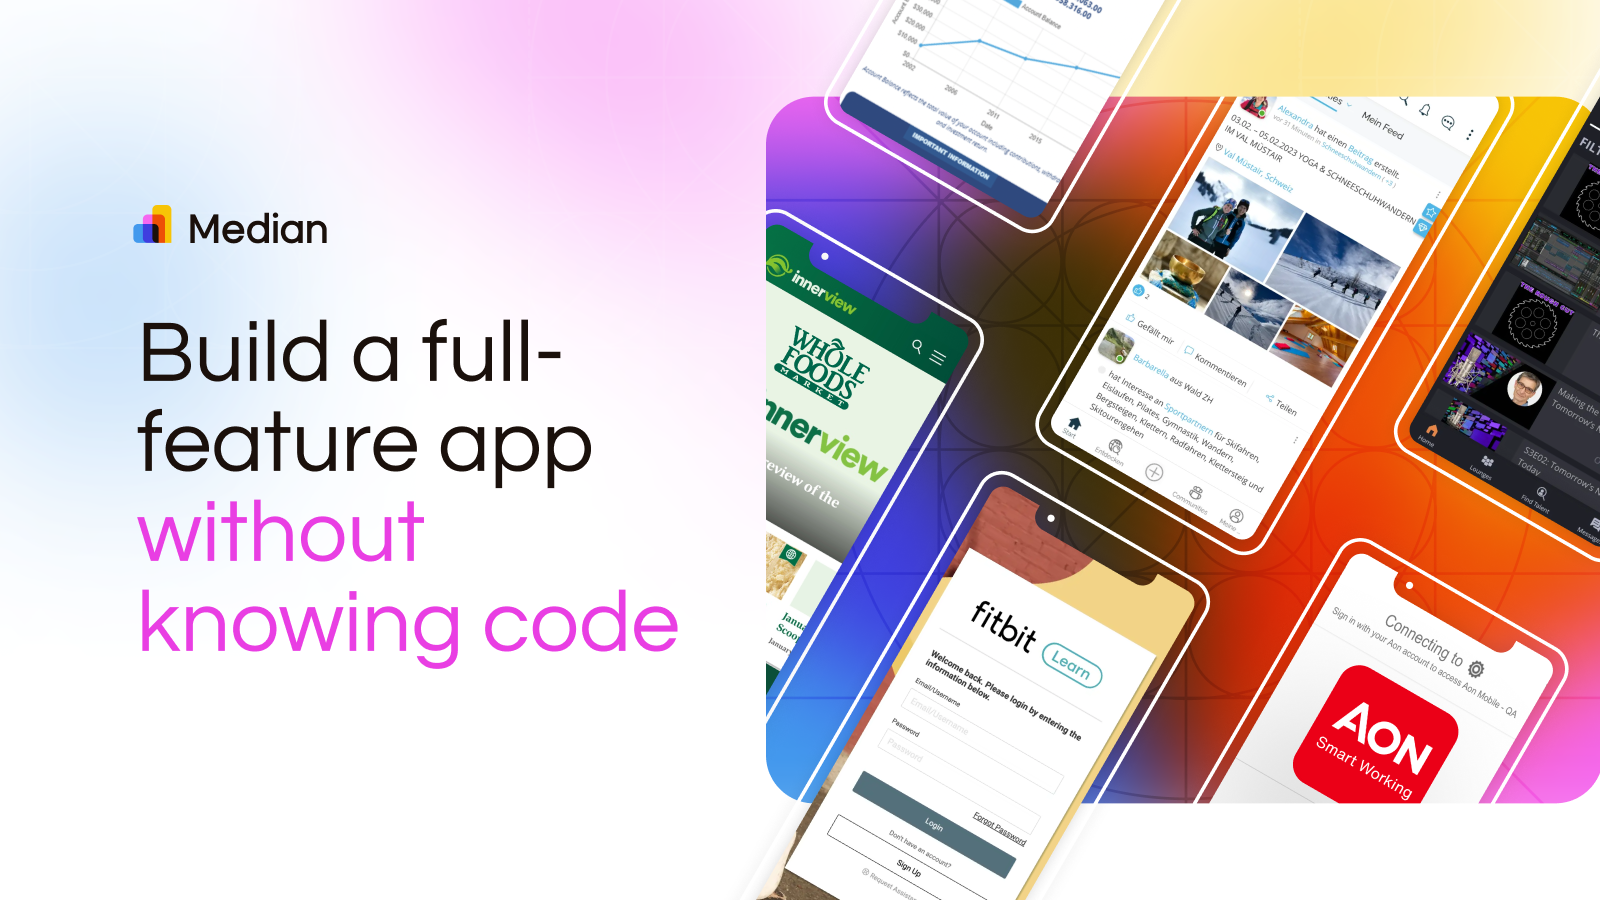 Utilisez Median.co pour construire une application complète sans connaître le code